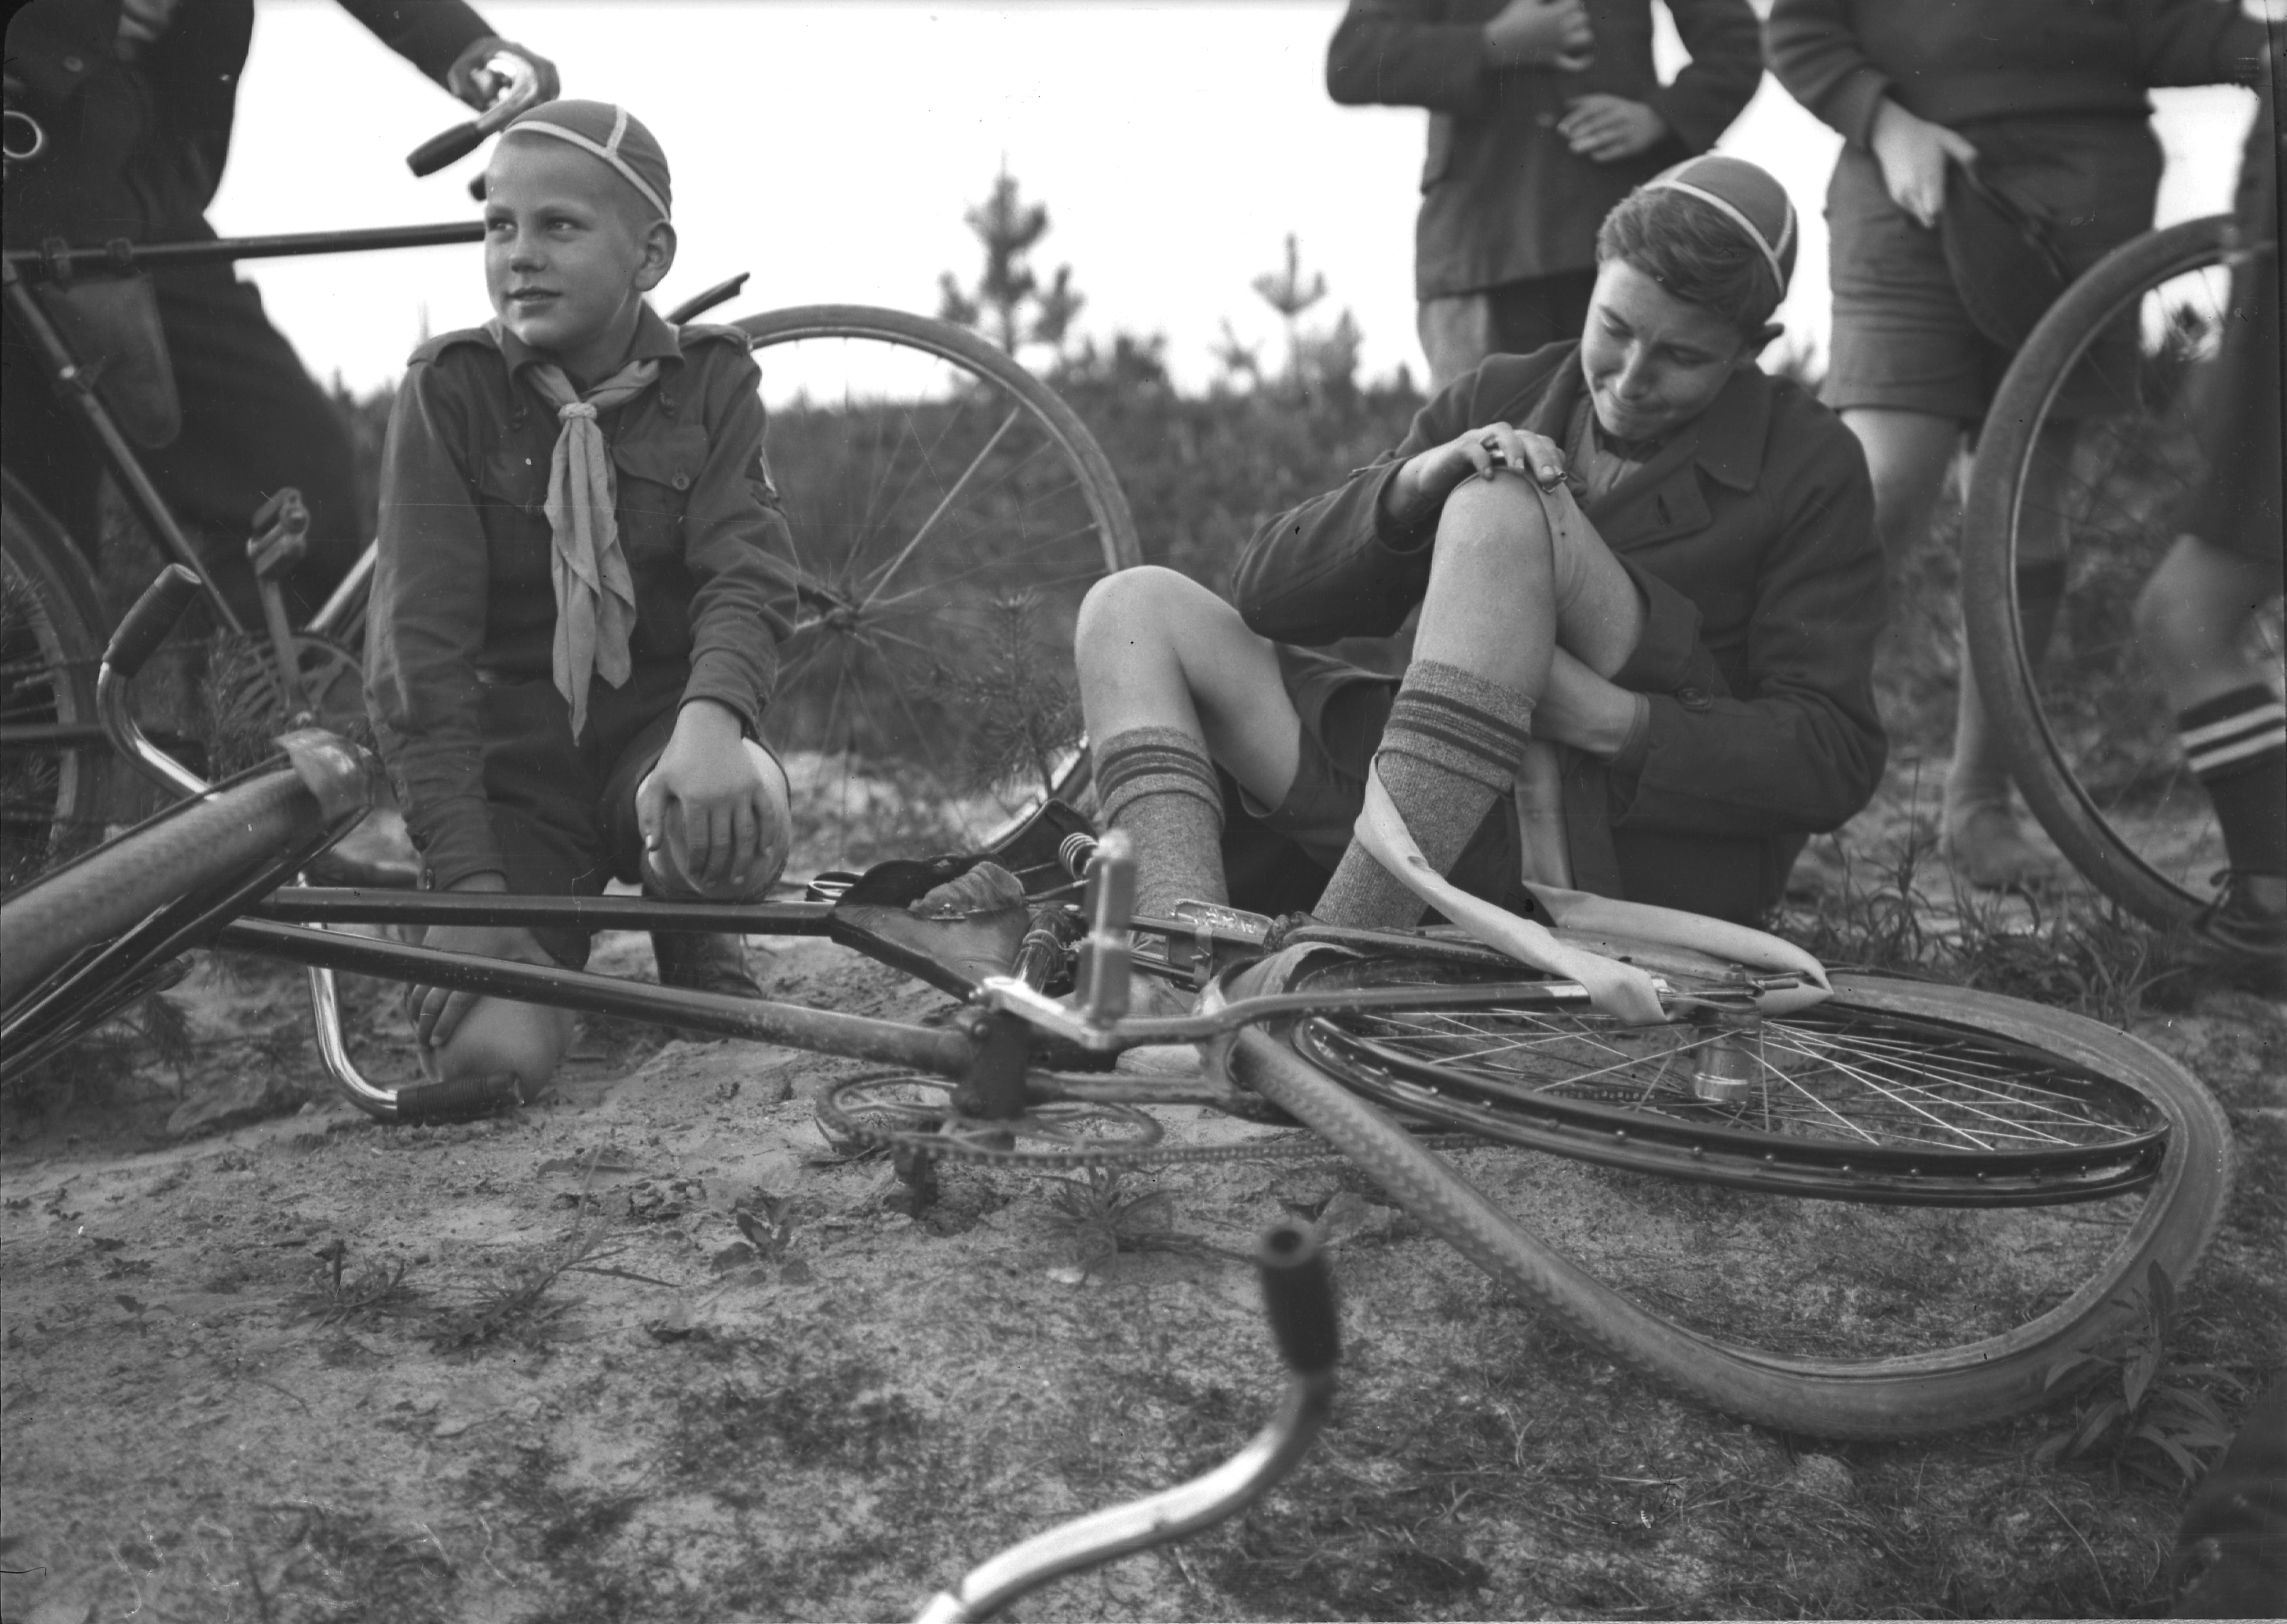 Tallinna Skautide Maleva liikmed rattaretkel. Väike õnnetus ja jalgrattakummi parandamine 1934. aastal. Rahvusarhiivi fotoarhiiv